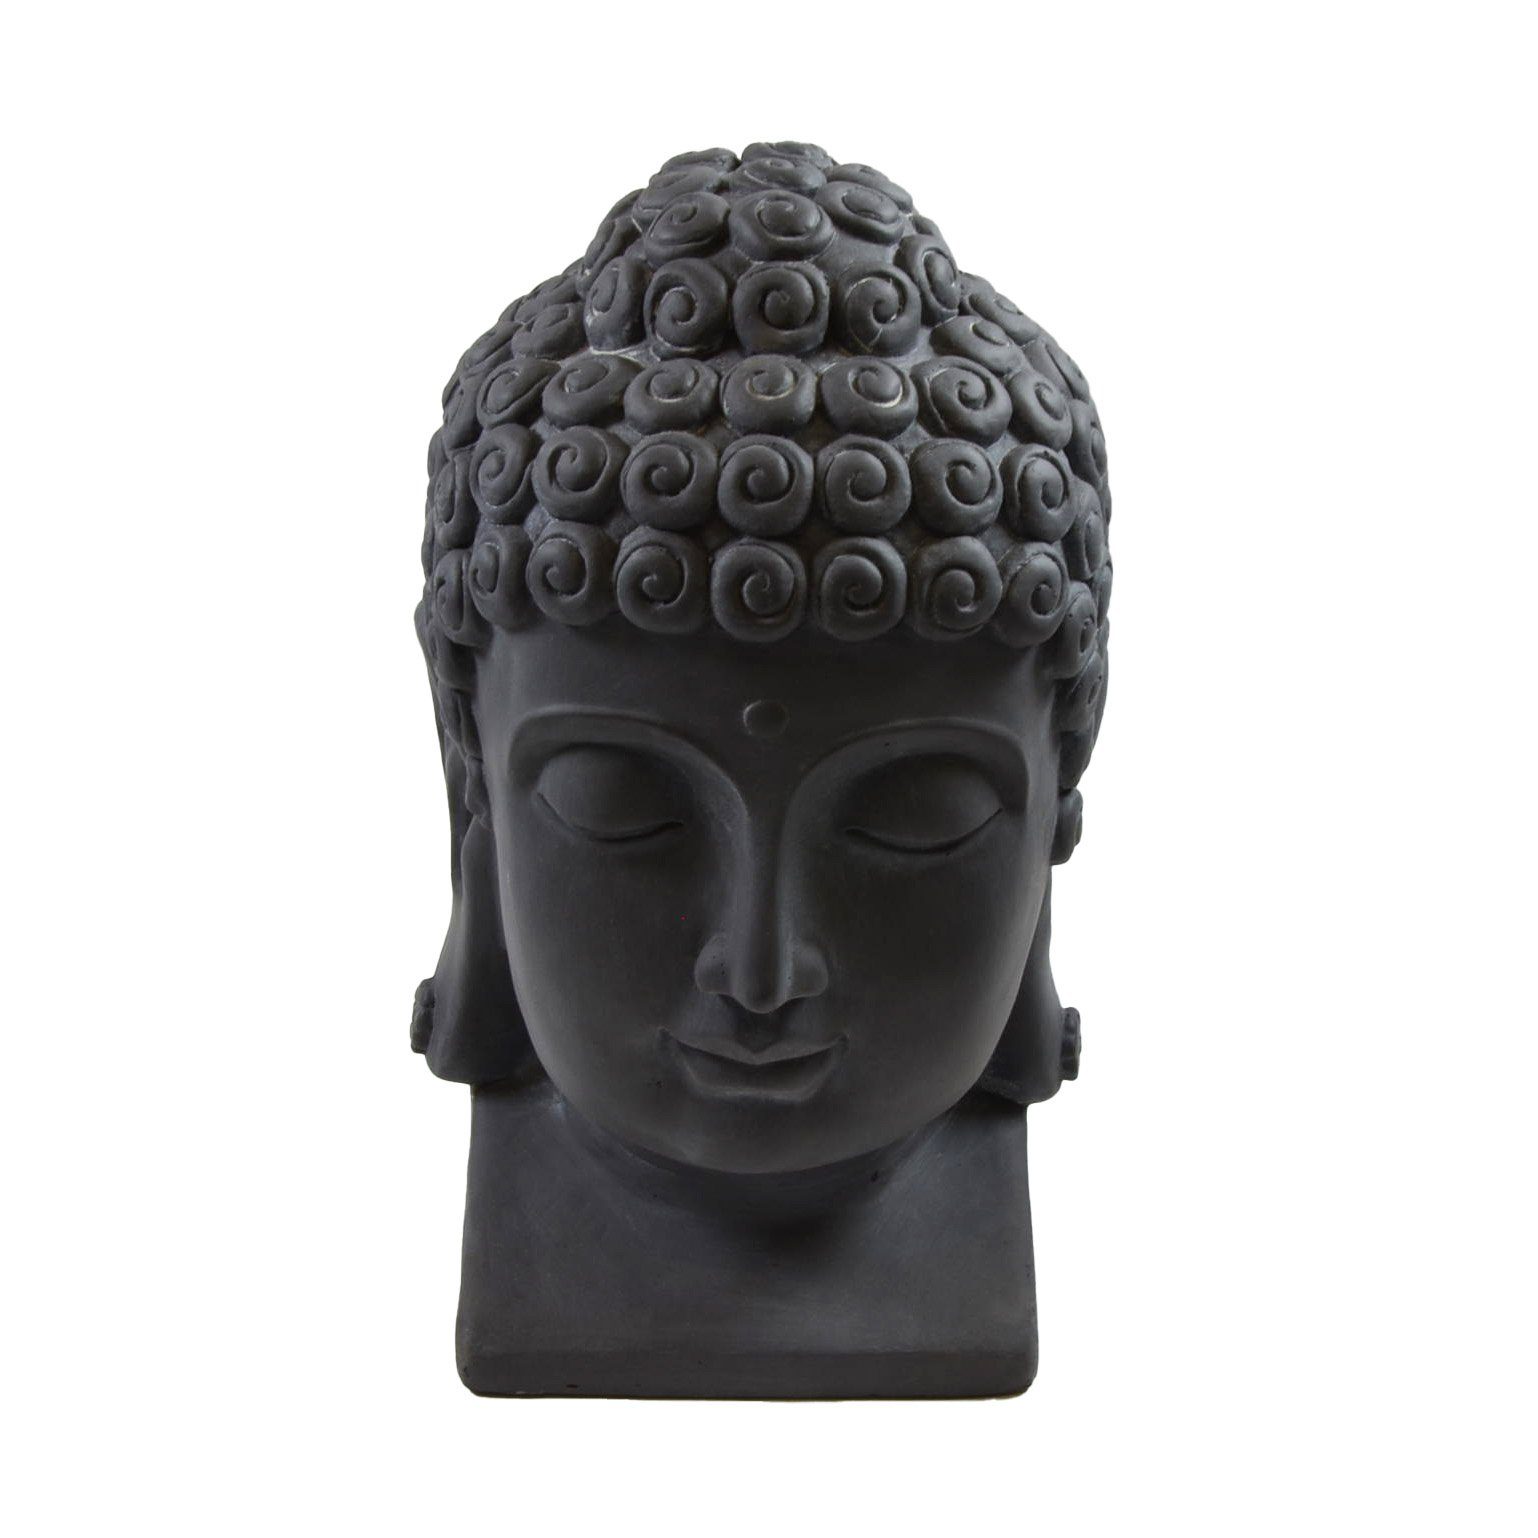 B&S Buddhafigur Buddha Kopf groß H 40 cm Steinfigur Deko Figur Skulptur Feng Shui